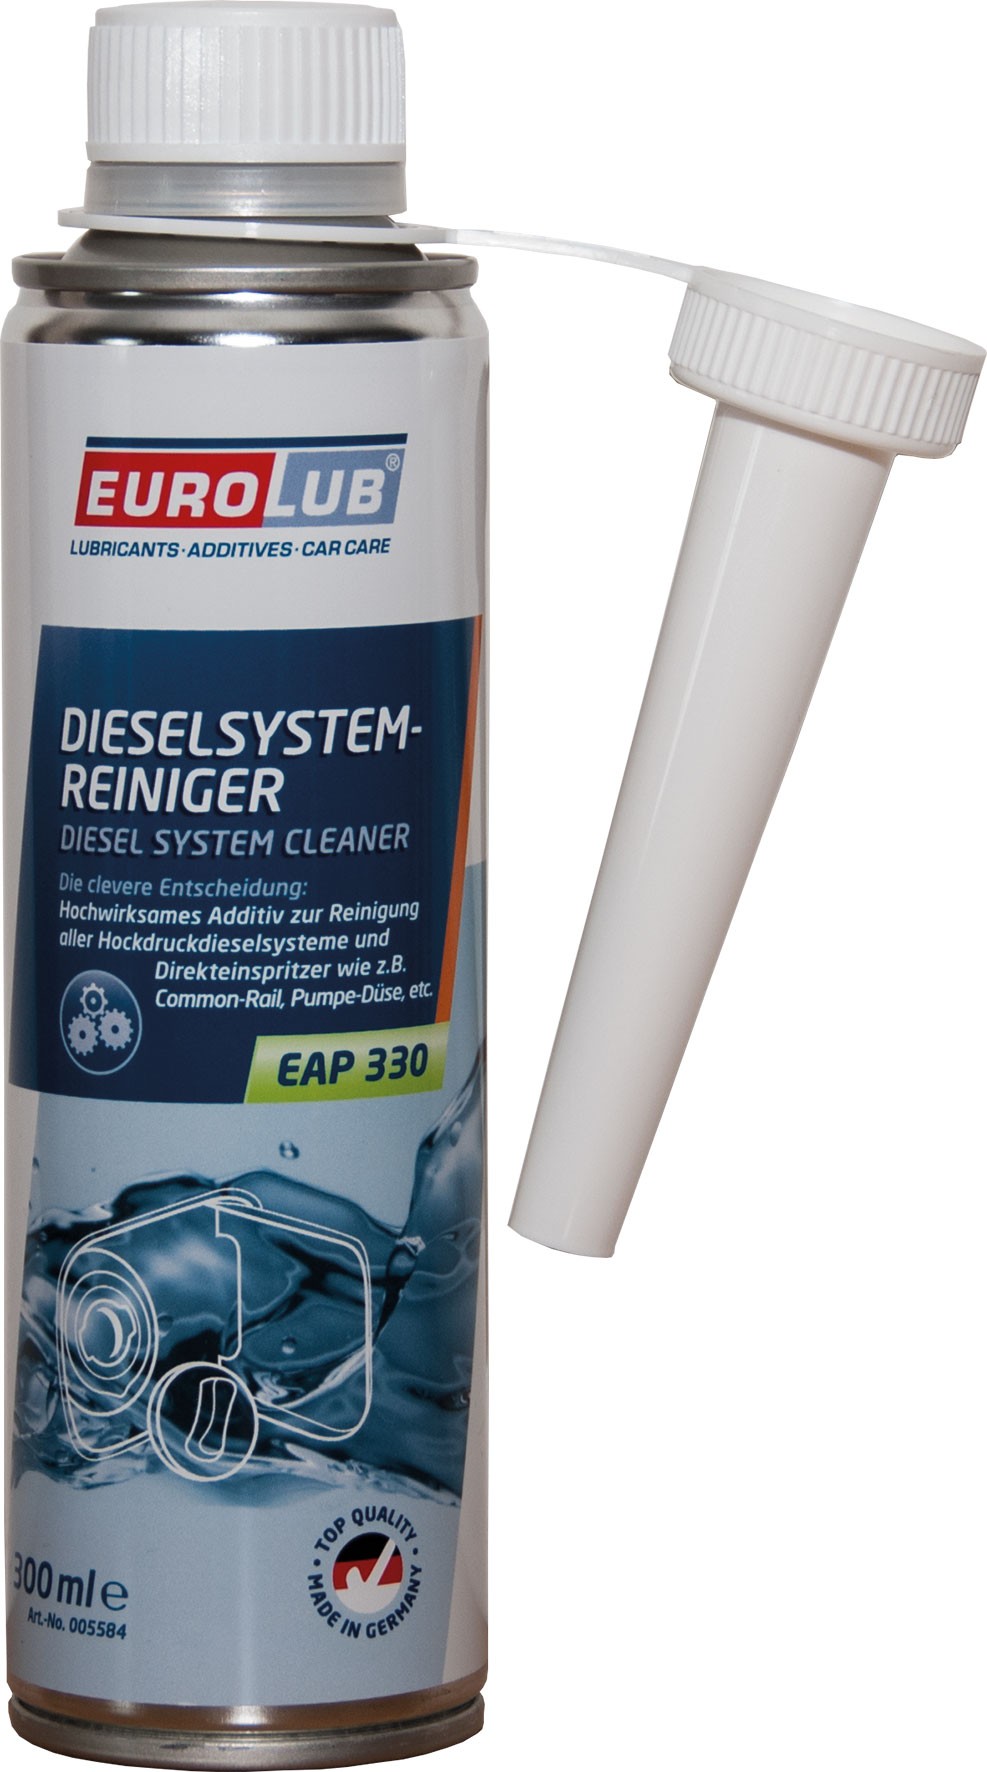 Eurolub Dieselsystemreiniger EAP 330 Diesel System Cleaner 300 ml